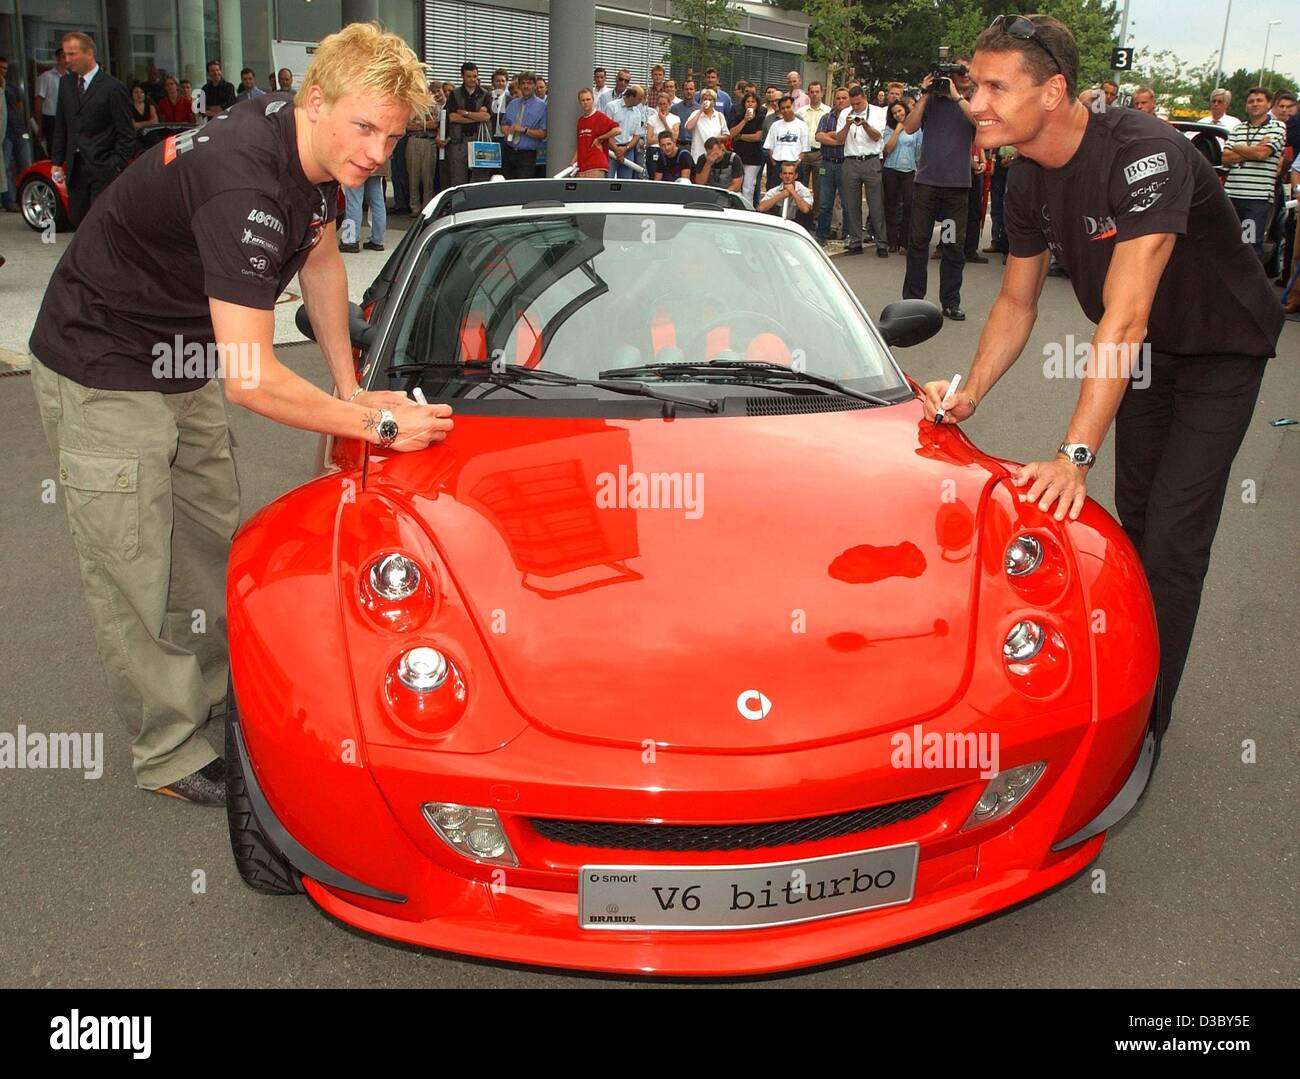 (Afp) - Les deux pilotes de Formule 1 McLaren-Mercedes Kimi Raeikkoenen (L) à partir de la Finlande et de David Coulthard (R) de l'Écosse signer leurs autographes sur le capot d'un nouveau prototype de la Smart Roadster V6 biturbo à l'enceinte de l'usine Smart dans Offenbach, Allemagne, 30 juillet 2003. Banque D'Images